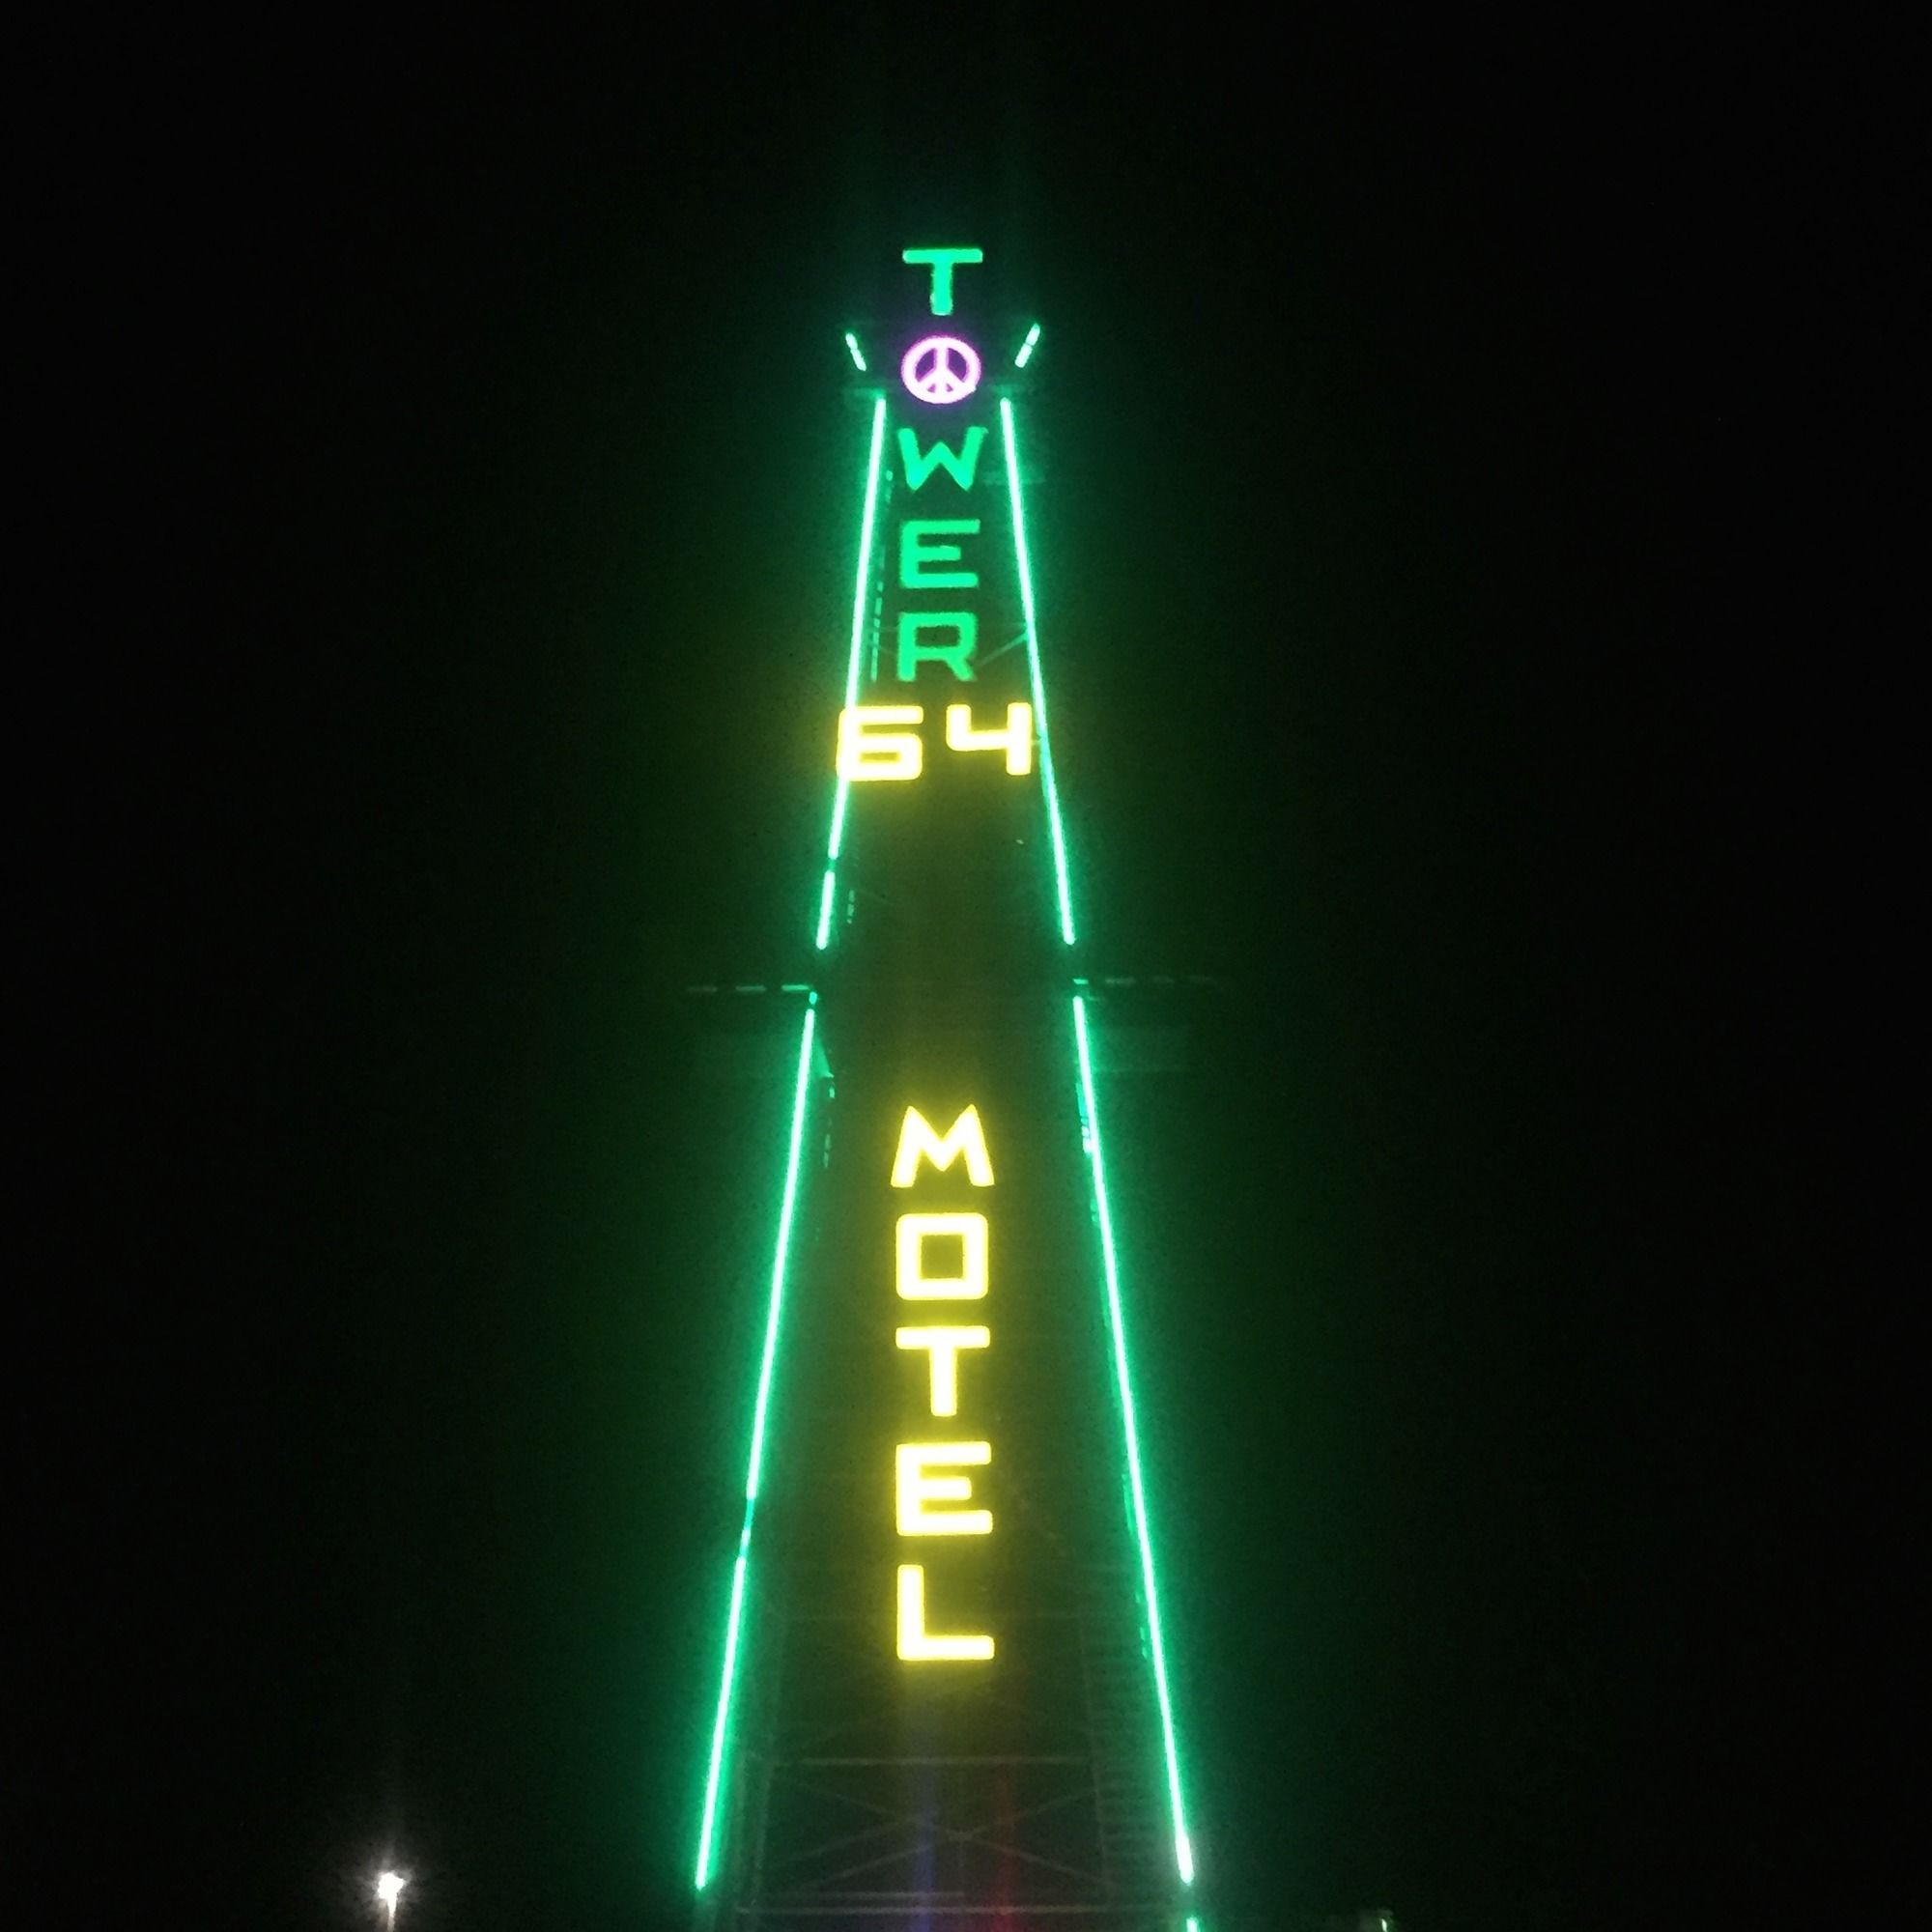 Tower 64 Motel & RV